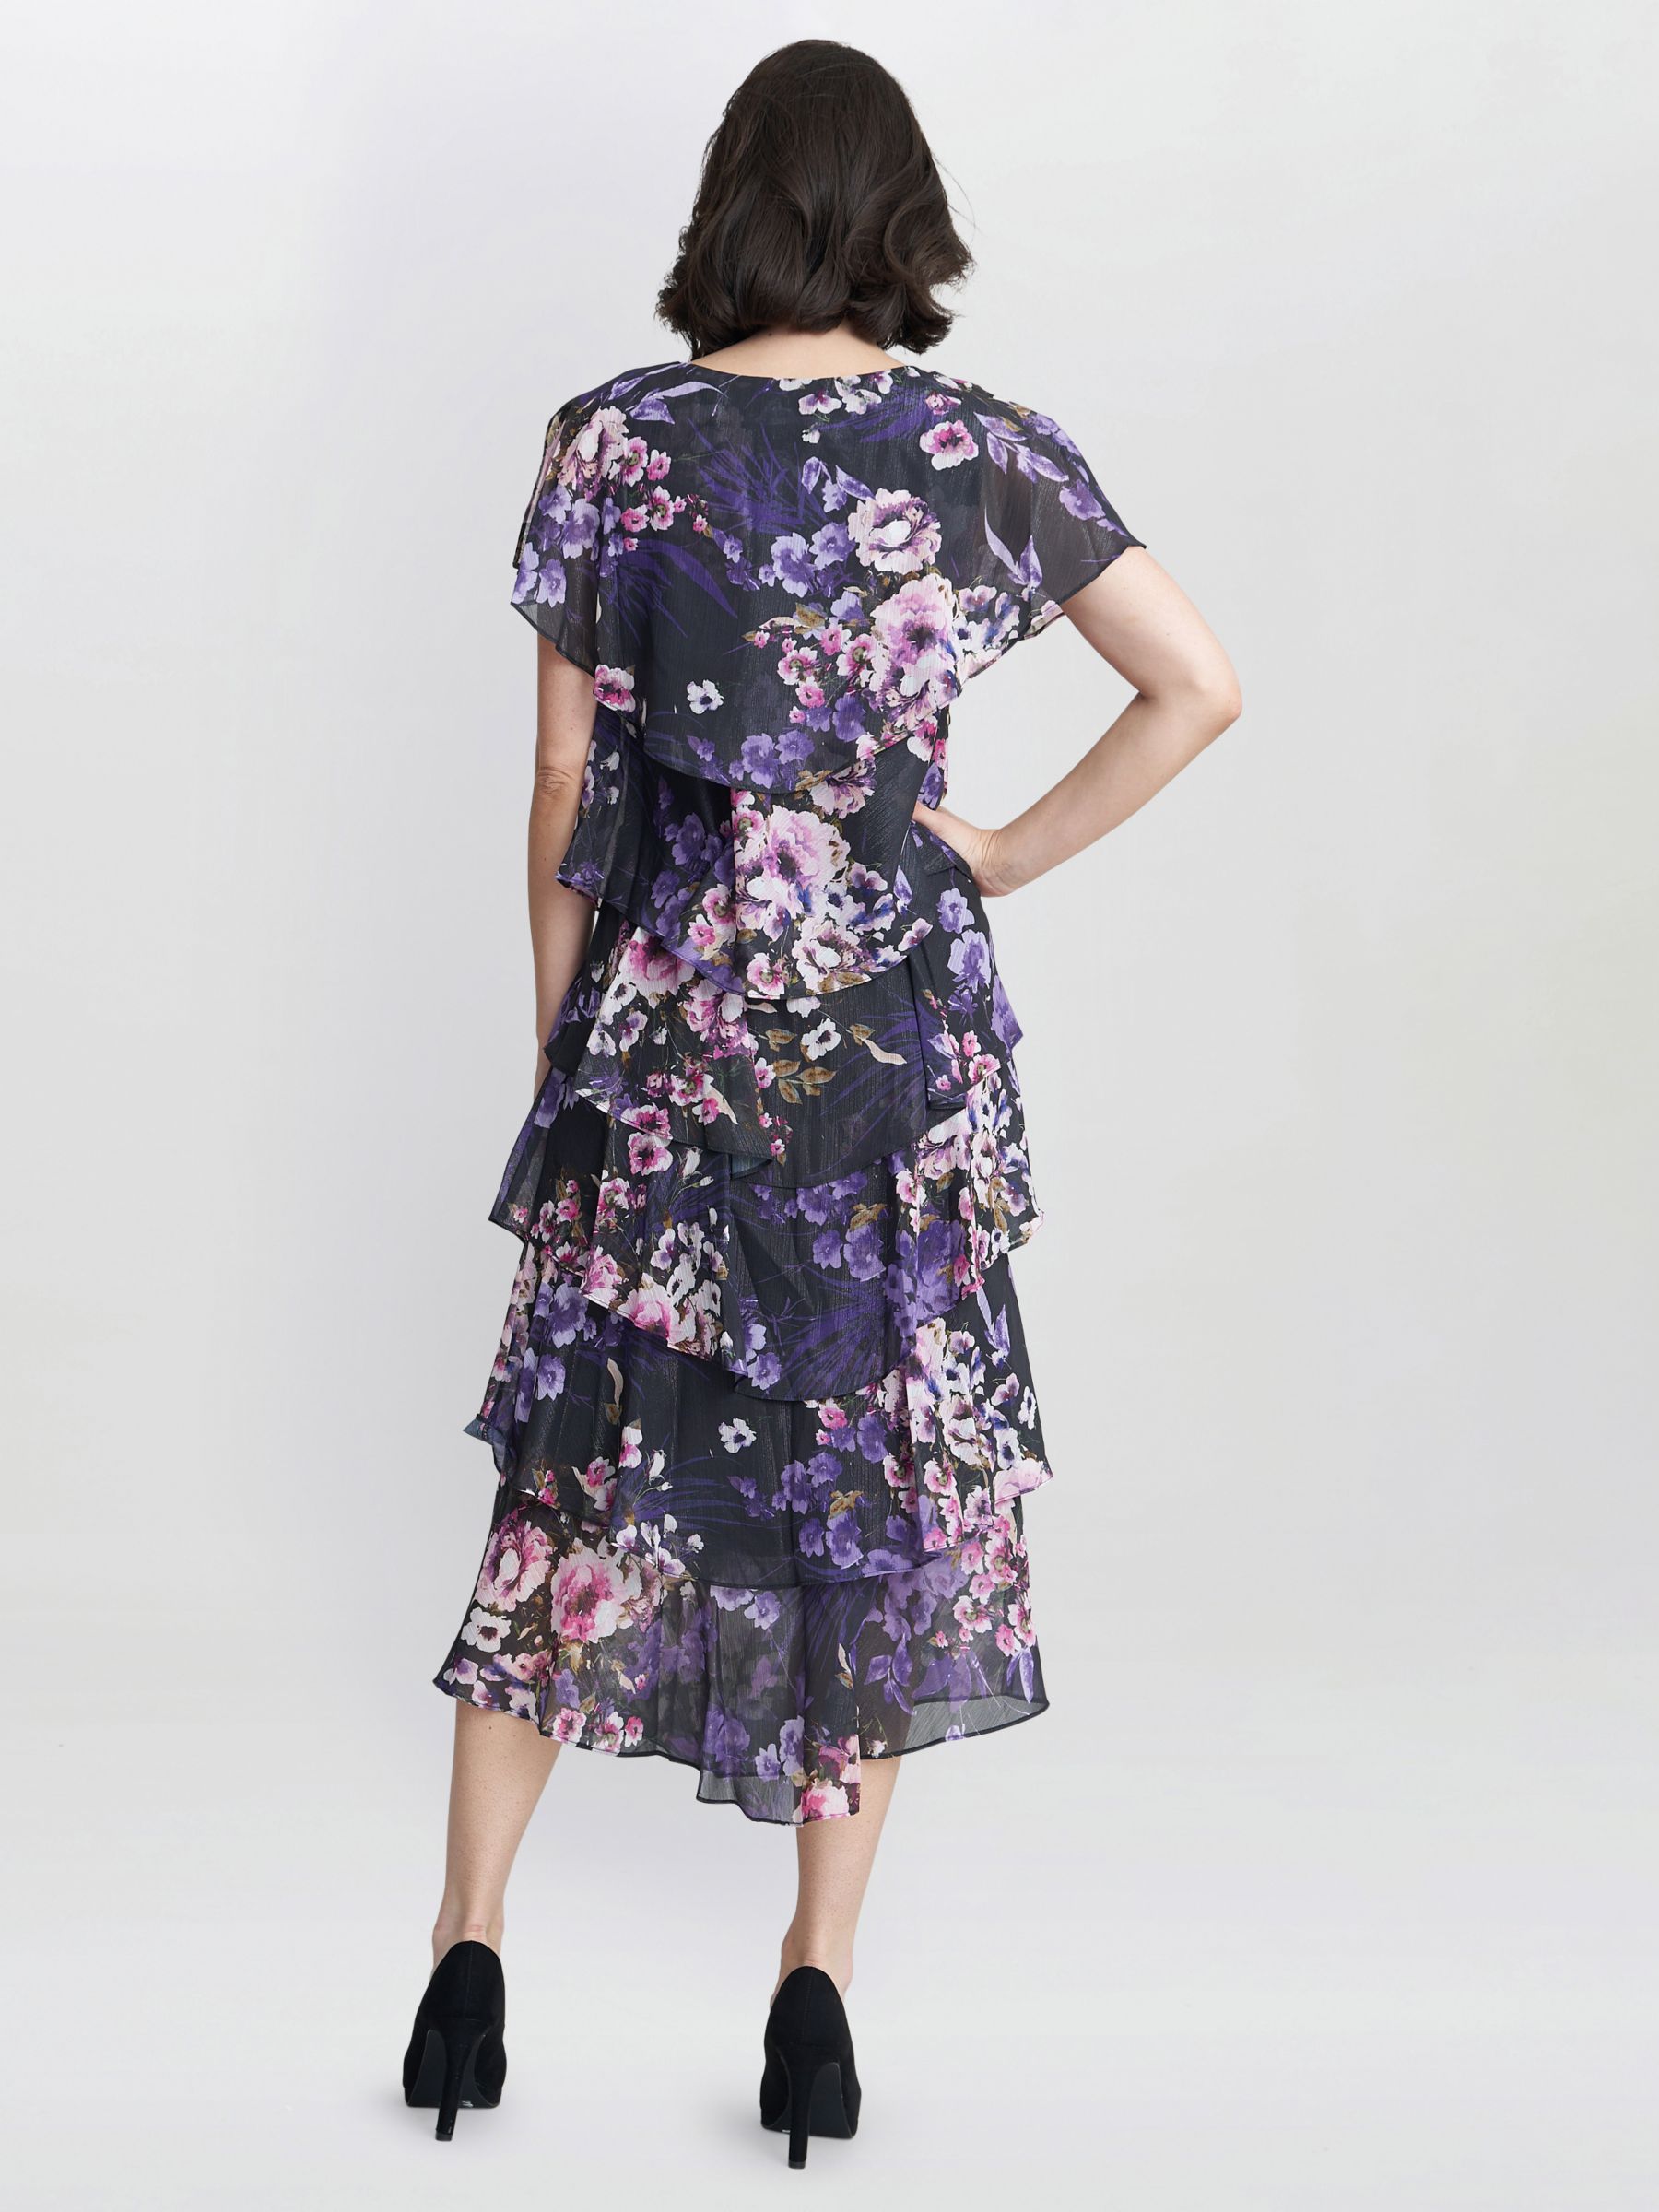 Gina Bacconi Leticia Floral Print Midi Tiered Dress, Black/Multi, 10